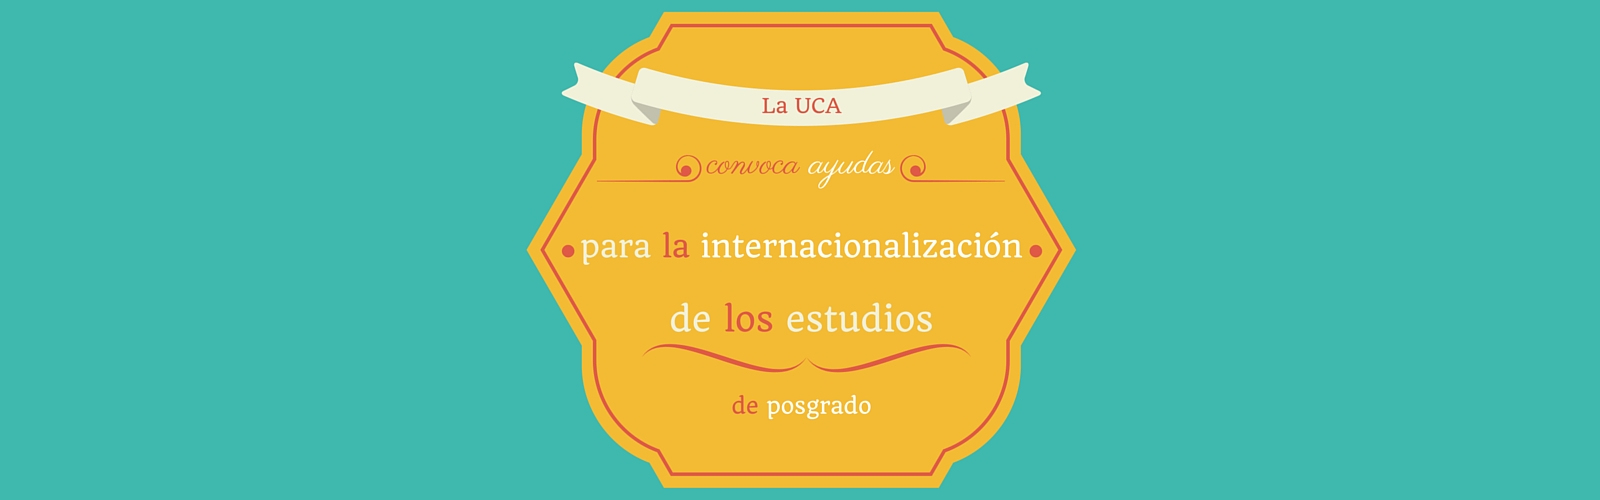 La UCA convoca ayudas para la internacionalización de los estudios de posgrado